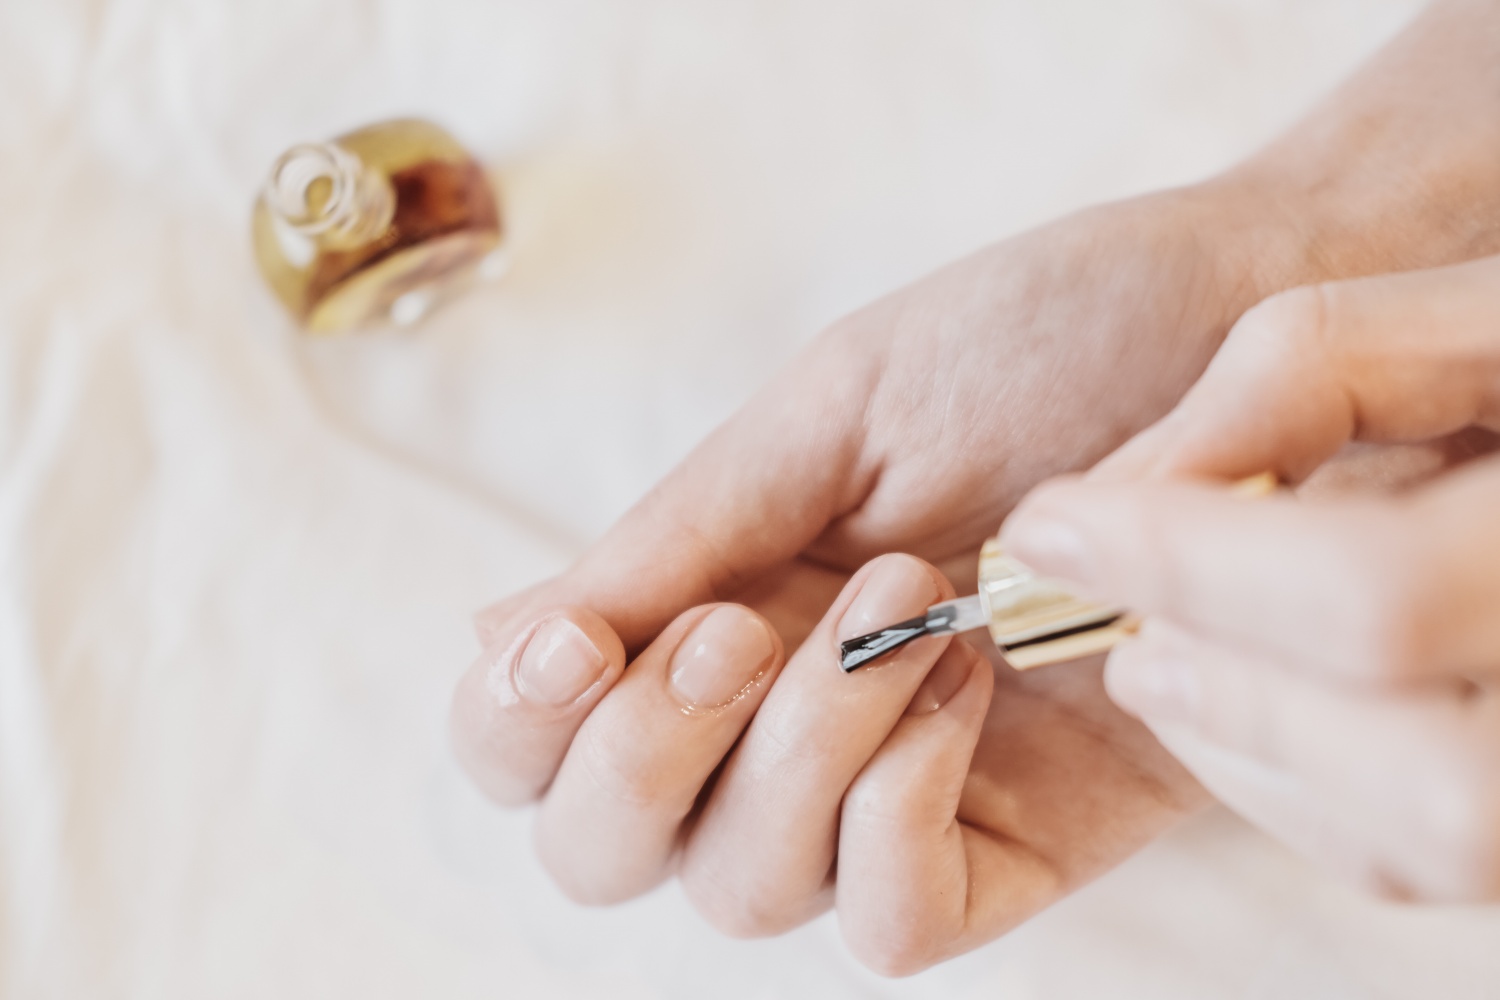 nail care-nail cuticle-cuticle oil-nails-hands